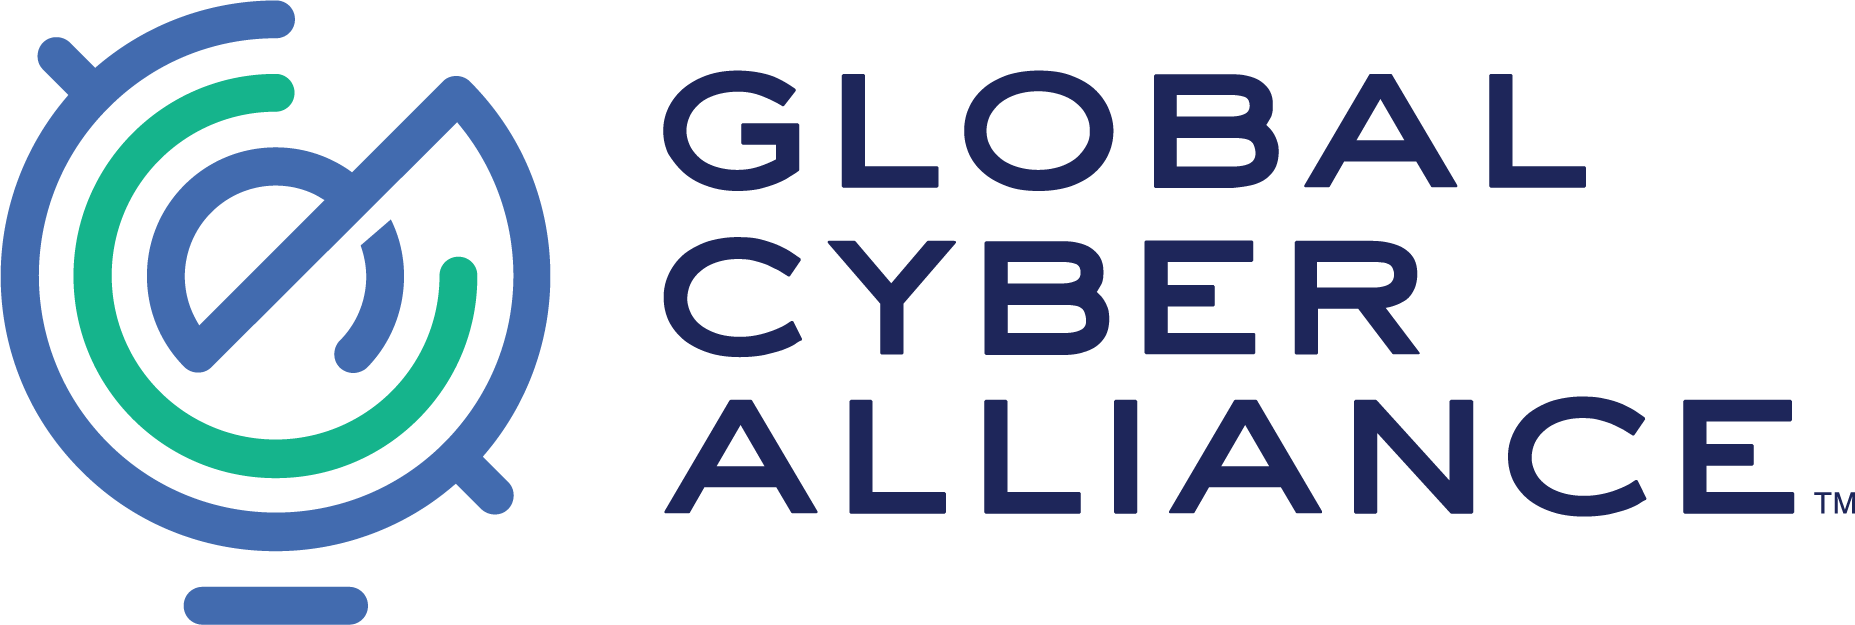 The Global Cyber Alliance (GCA)